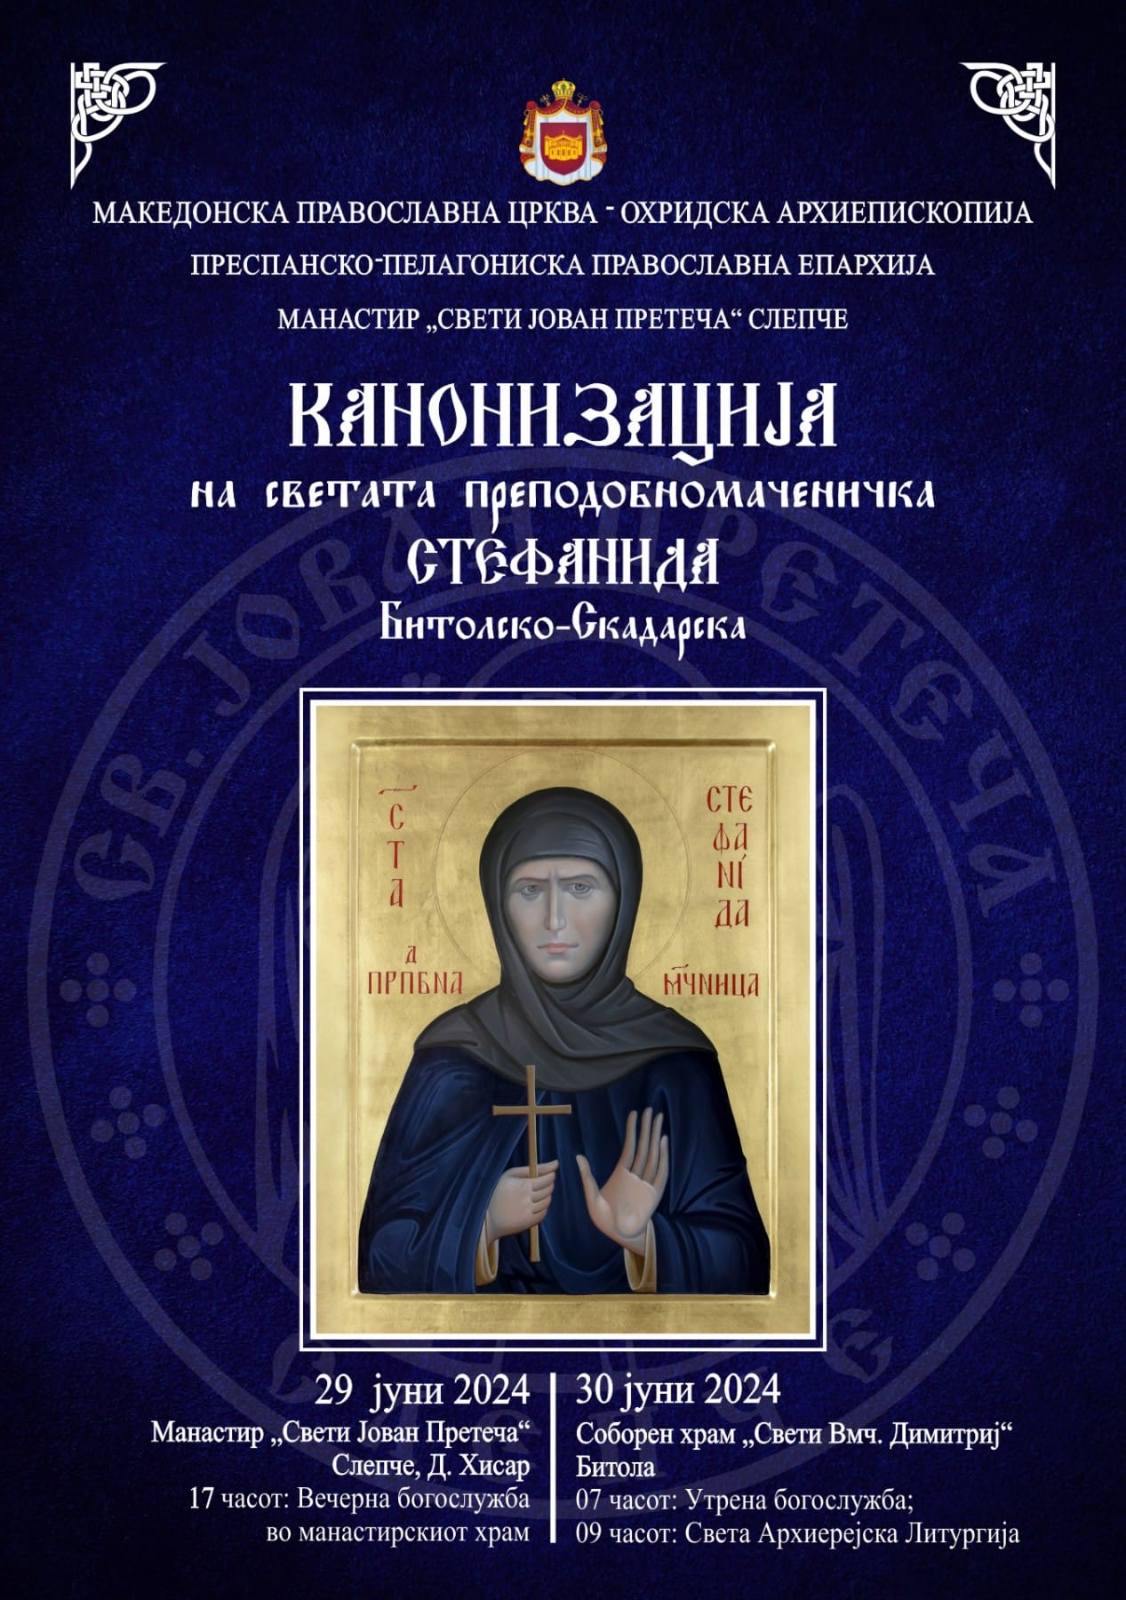 Најава: Канонизација на Светата преподобномаченичка Стефанида Битолско–Скaдарска